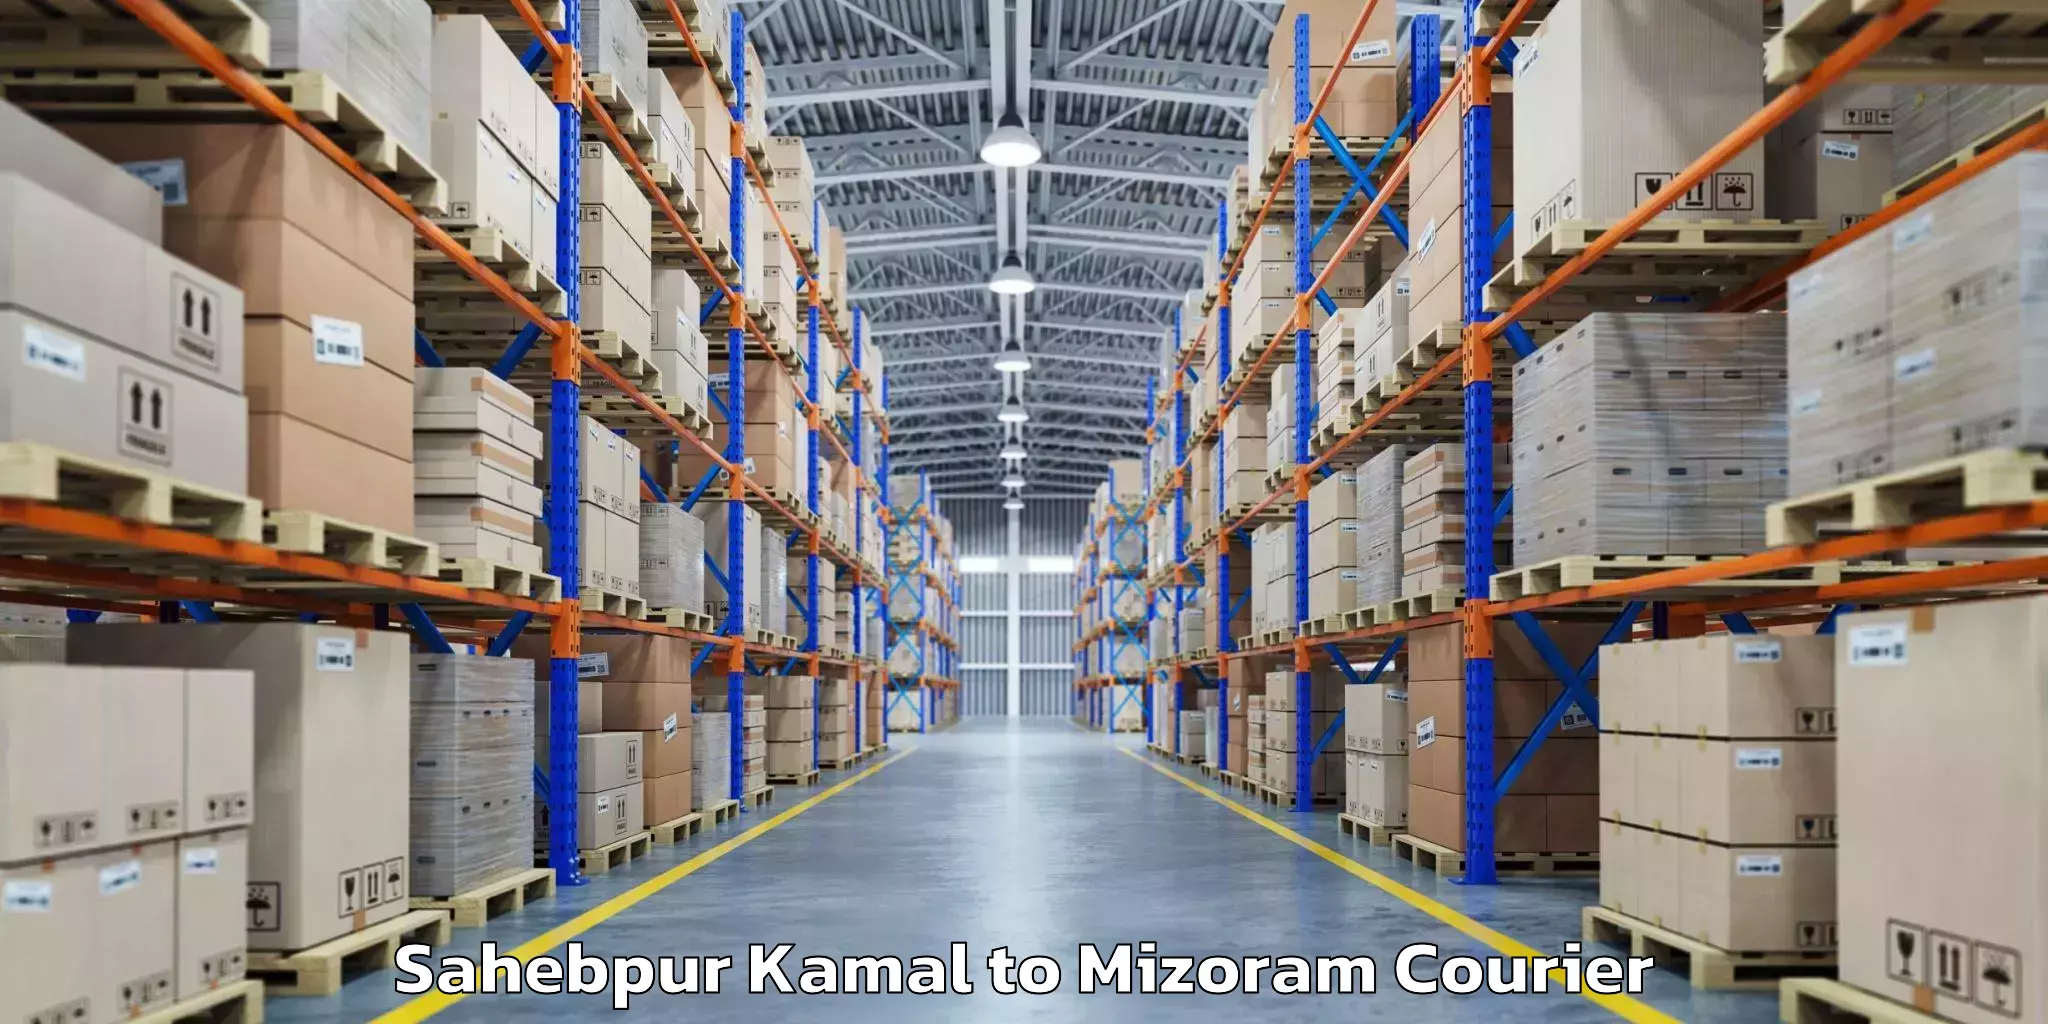 Luggage transport consulting Sahebpur Kamal to Mizoram